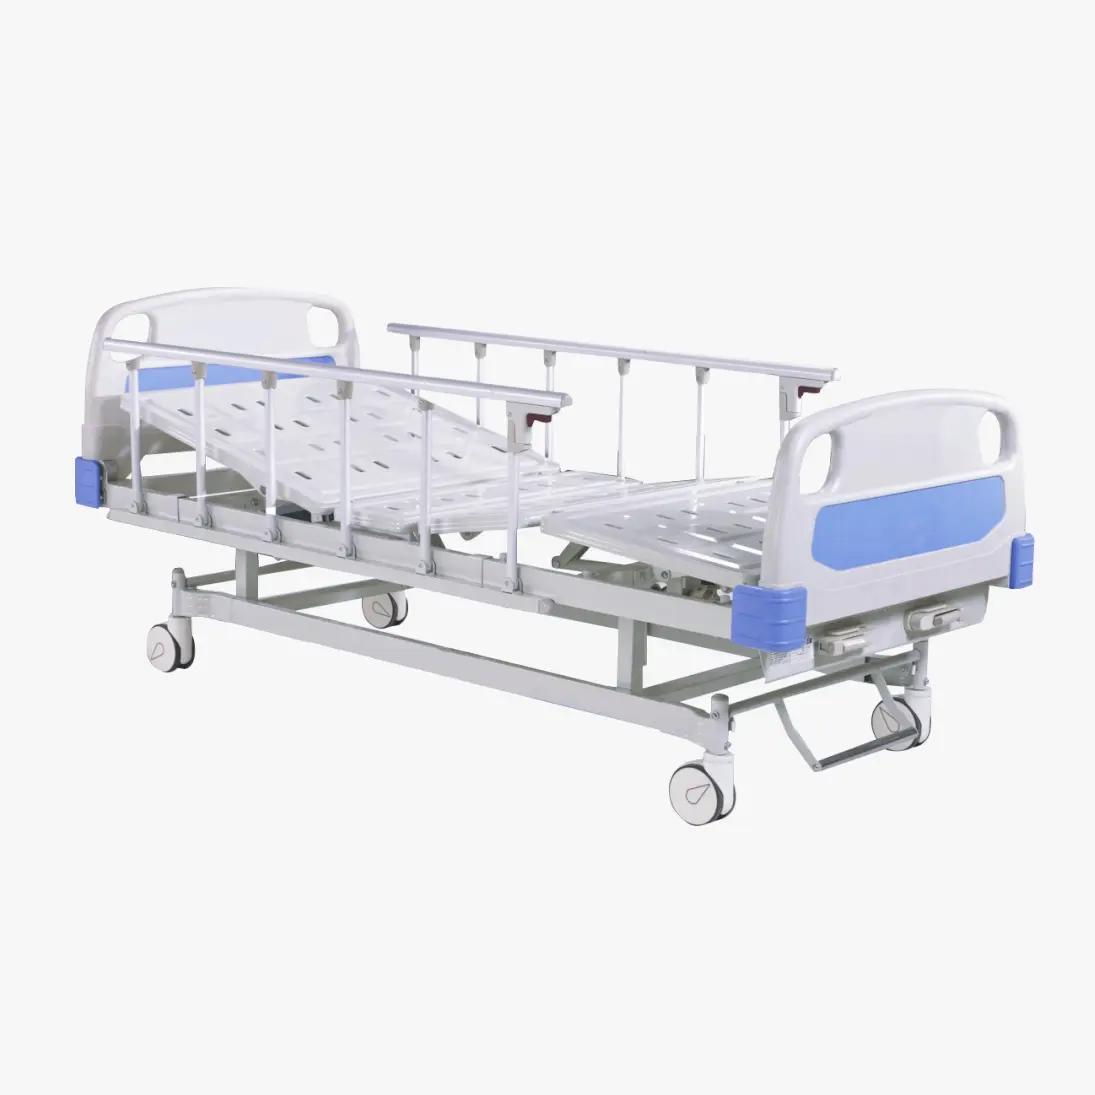 Како болнички кревети доприносе нези пацијената?